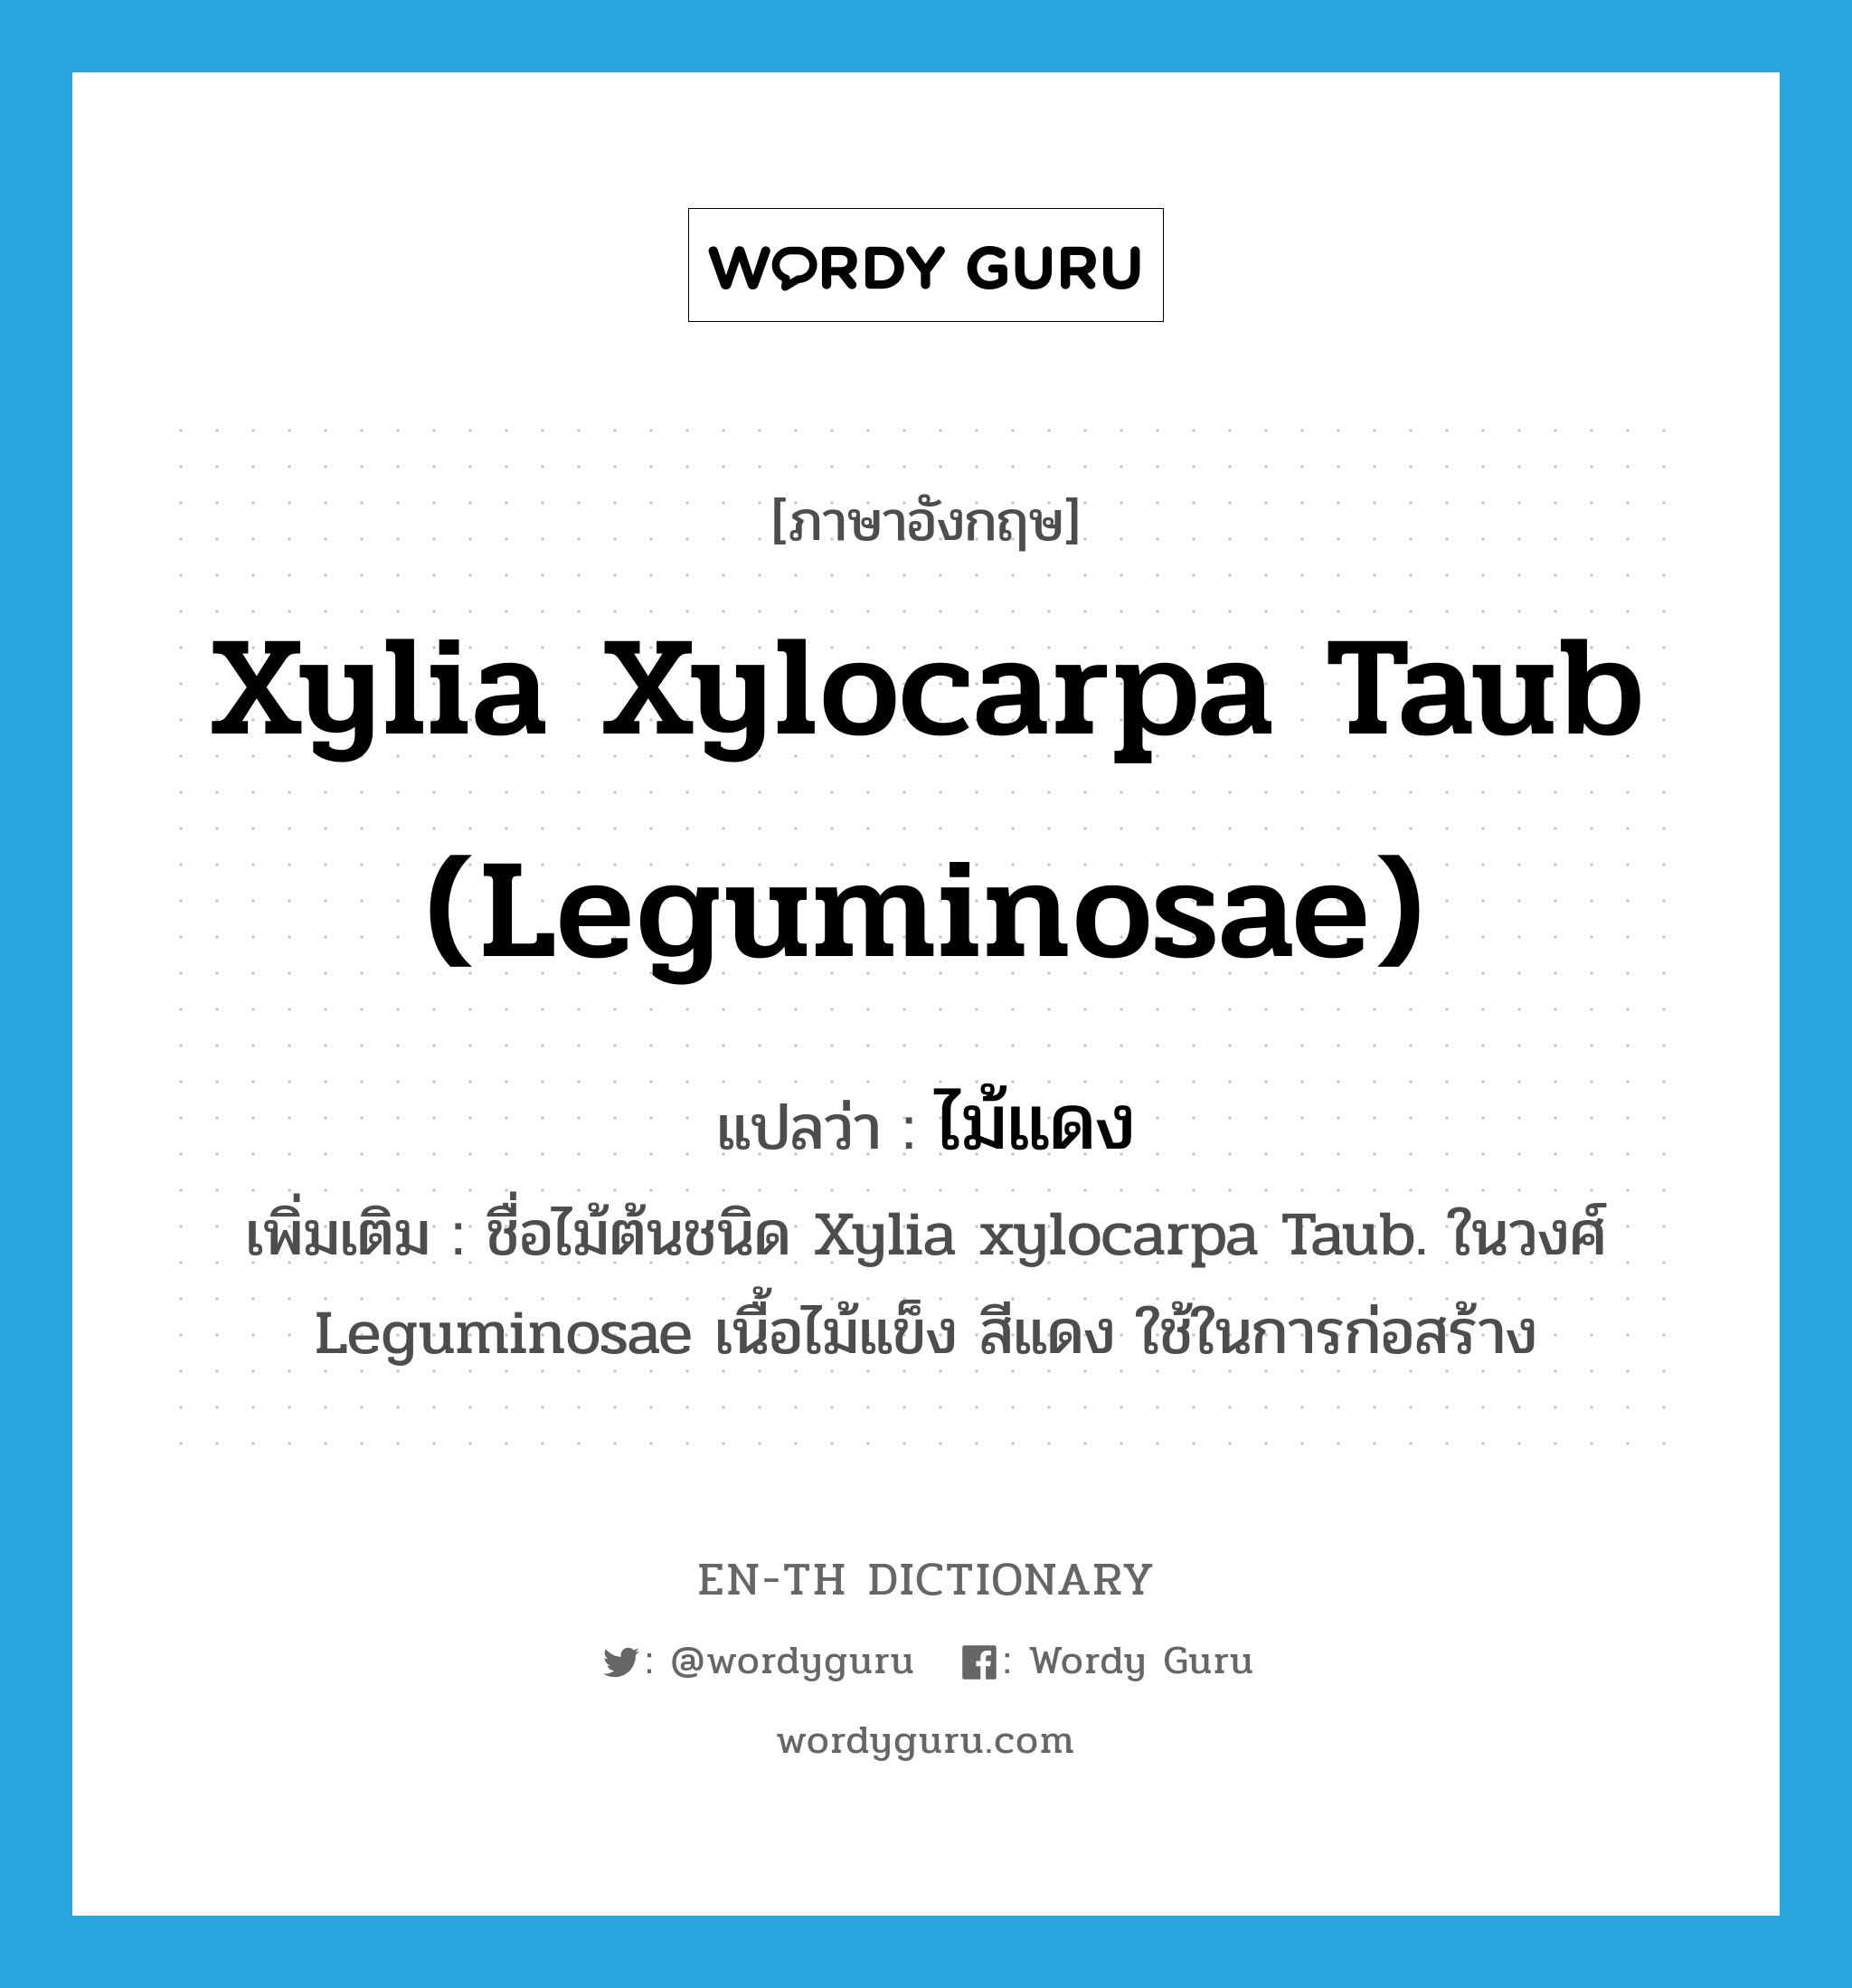 ไม้แดง ภาษาอังกฤษ?, คำศัพท์ภาษาอังกฤษ ไม้แดง แปลว่า Xylia xylocarpa Taub (Leguminosae) ประเภท N เพิ่มเติม ชื่อไม้ต้นชนิด Xylia xylocarpa Taub. ในวงศ์ Leguminosae เนื้อไม้แข็ง สีแดง ใช้ในการก่อสร้าง หมวด N